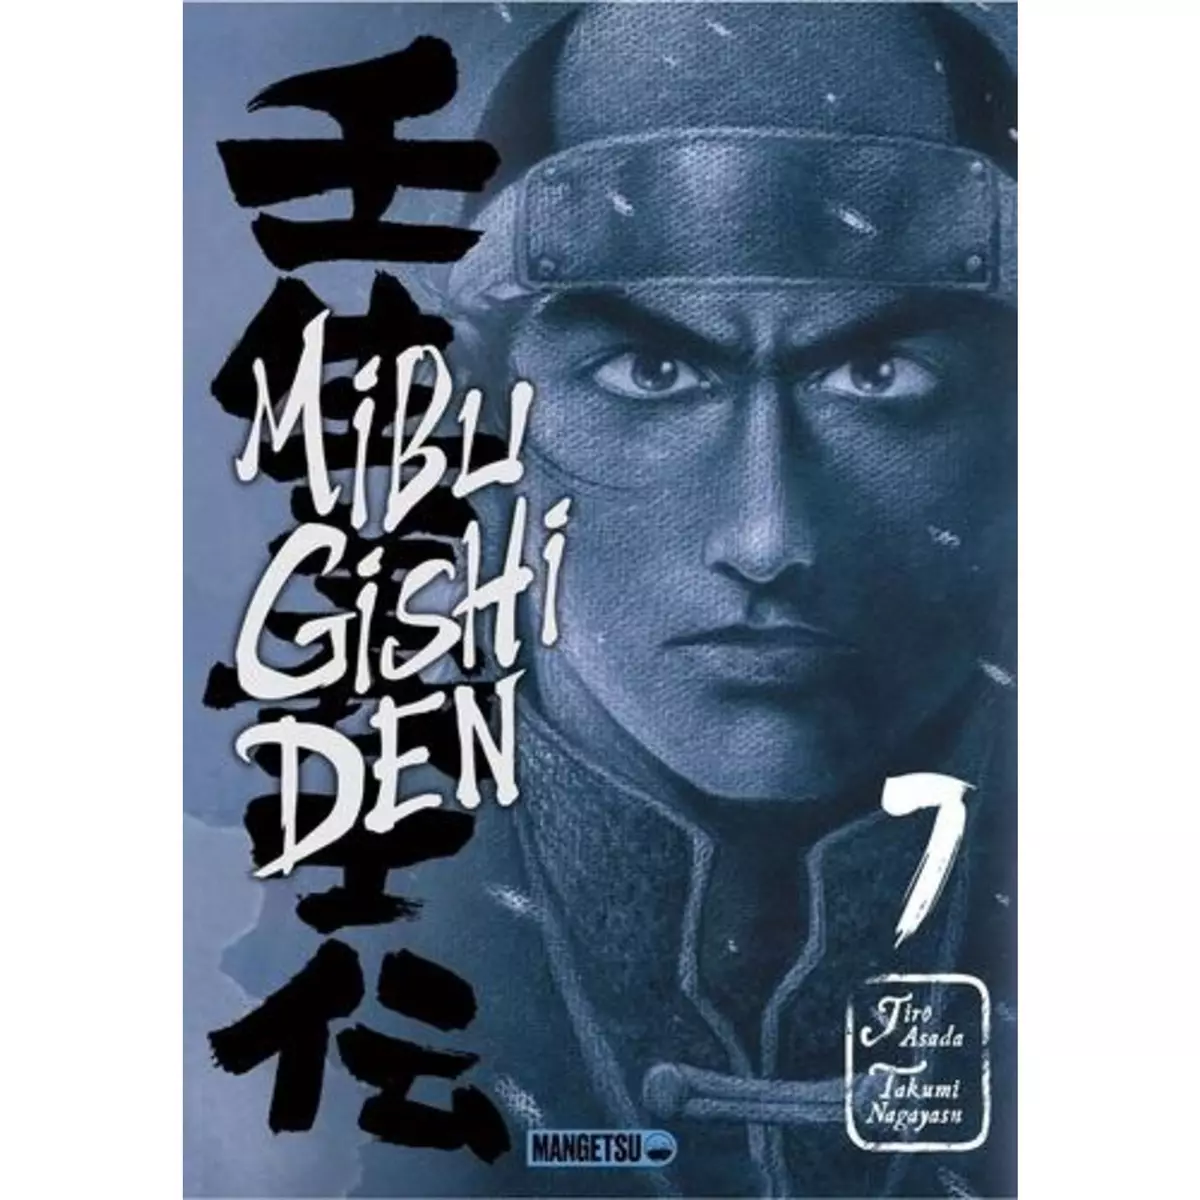  MIBU GISHI DEN TOME 7 , Nagayasu Takumi